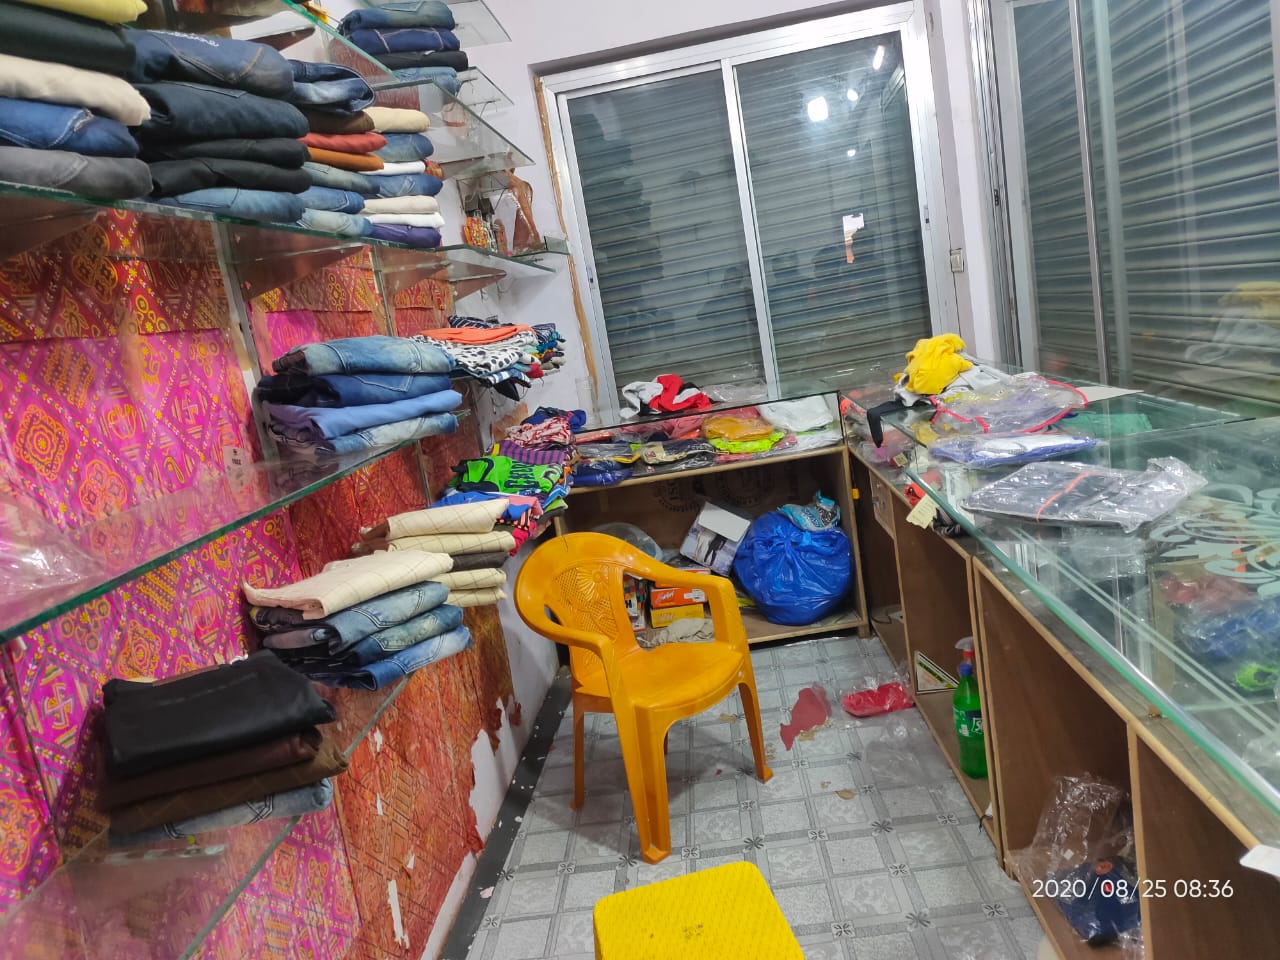 कपड़े की दुकान का ताला तोड़ कर चोरों ने किया लाखों का माल साफ